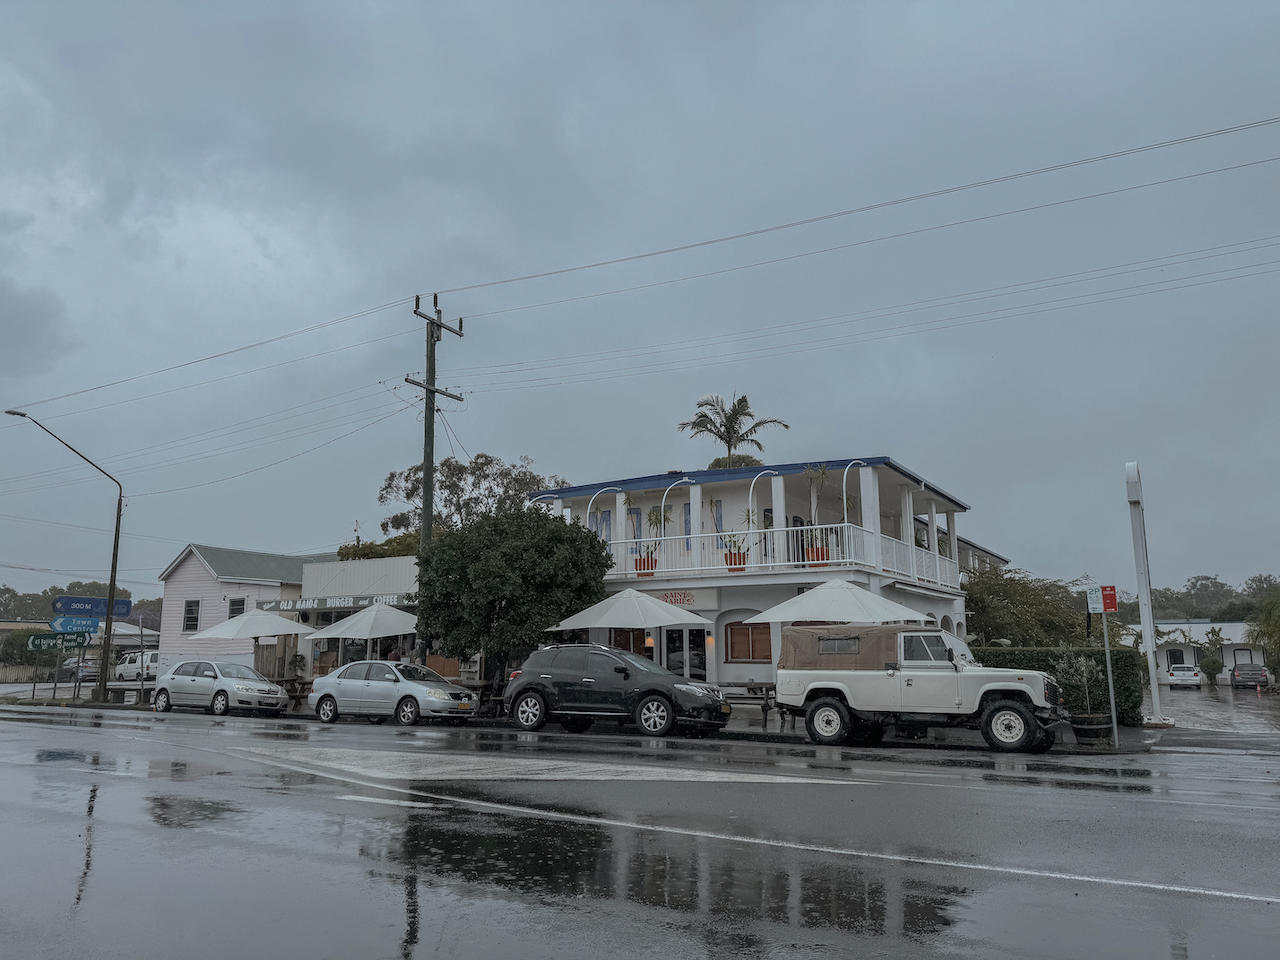 Rue de la ville sous la pluie - Brunswick Heads - Byron Bay - New South Wales - Australie